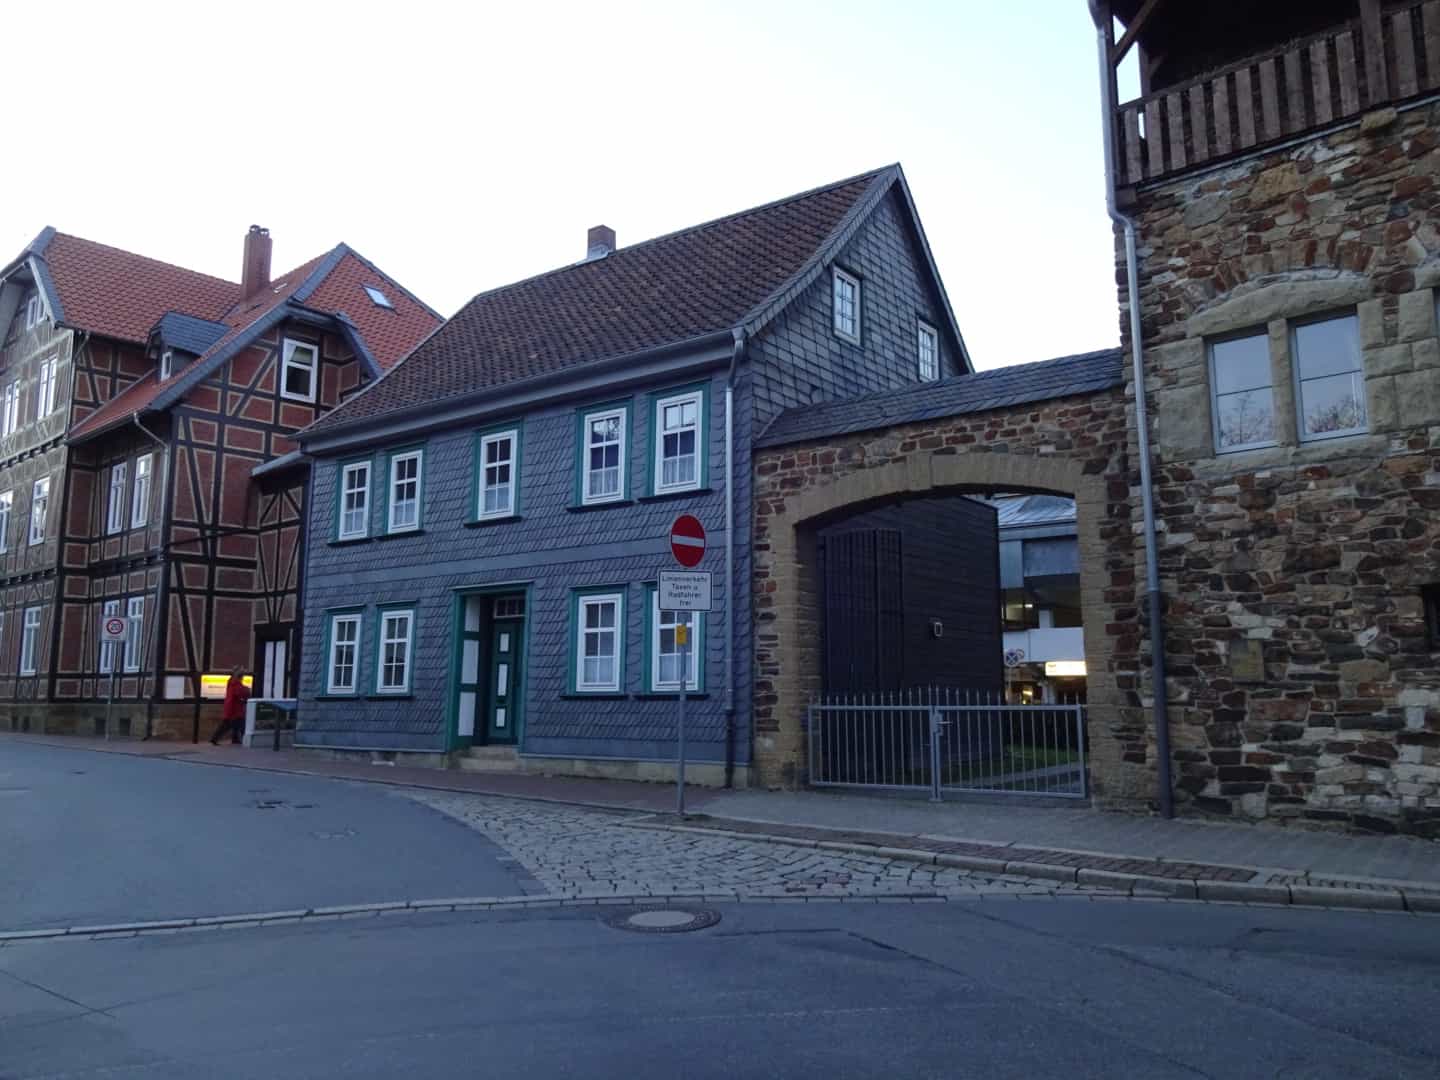 Huse i Goslar er enten bindingsværk, i skifer eller bygget af gamle sten